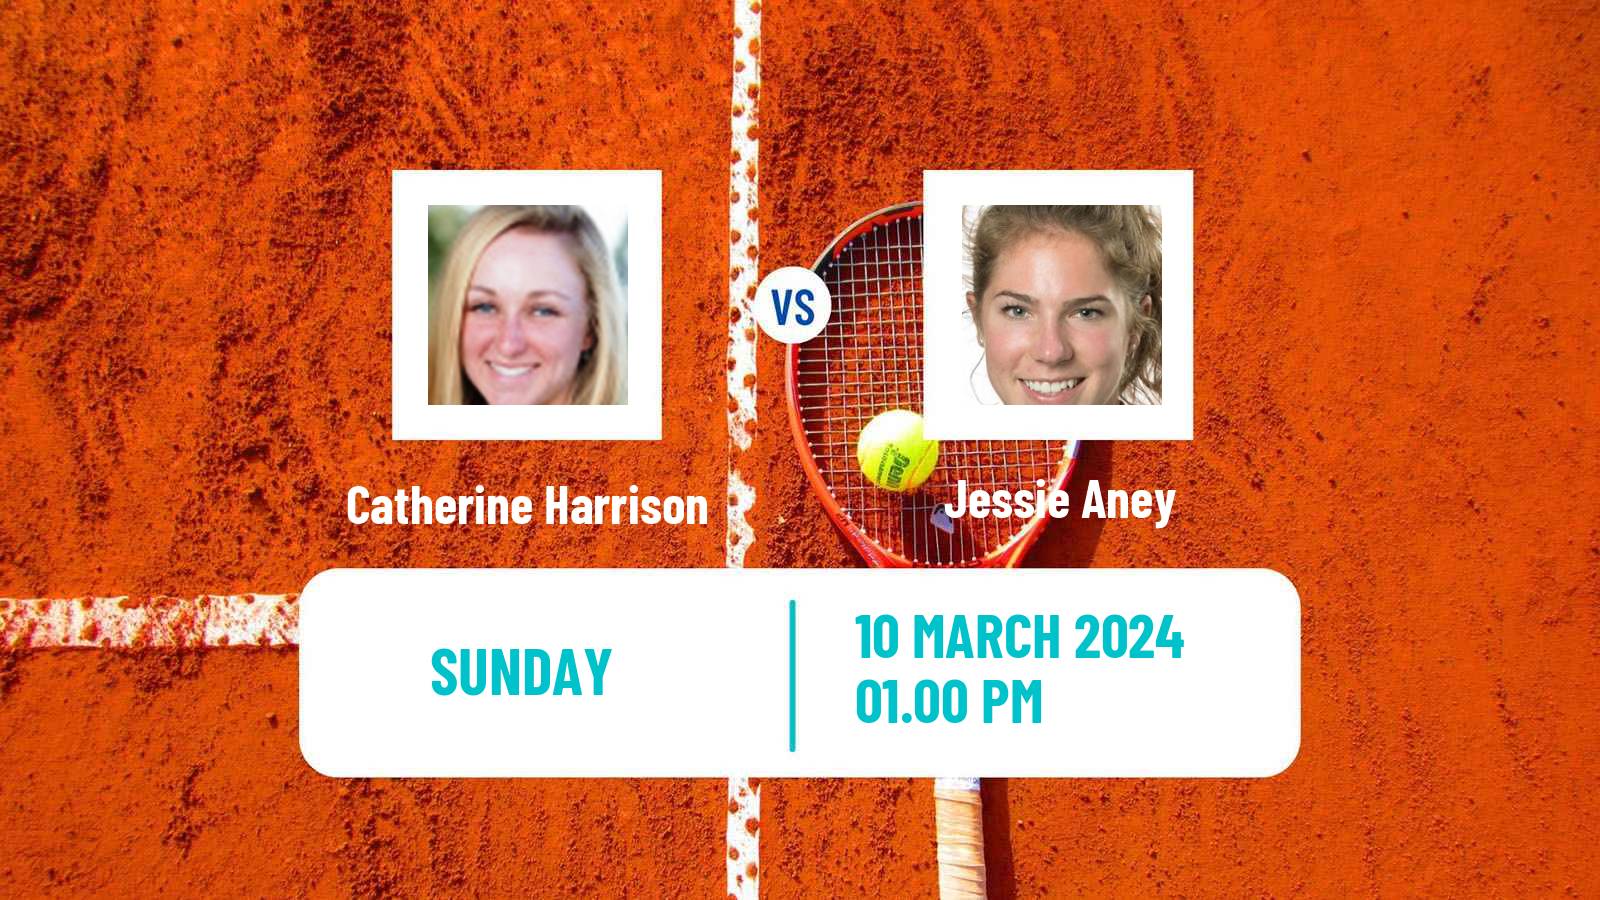 Tennis ITF W15 Brossard Women Catherine Harrison - Jessie Aney